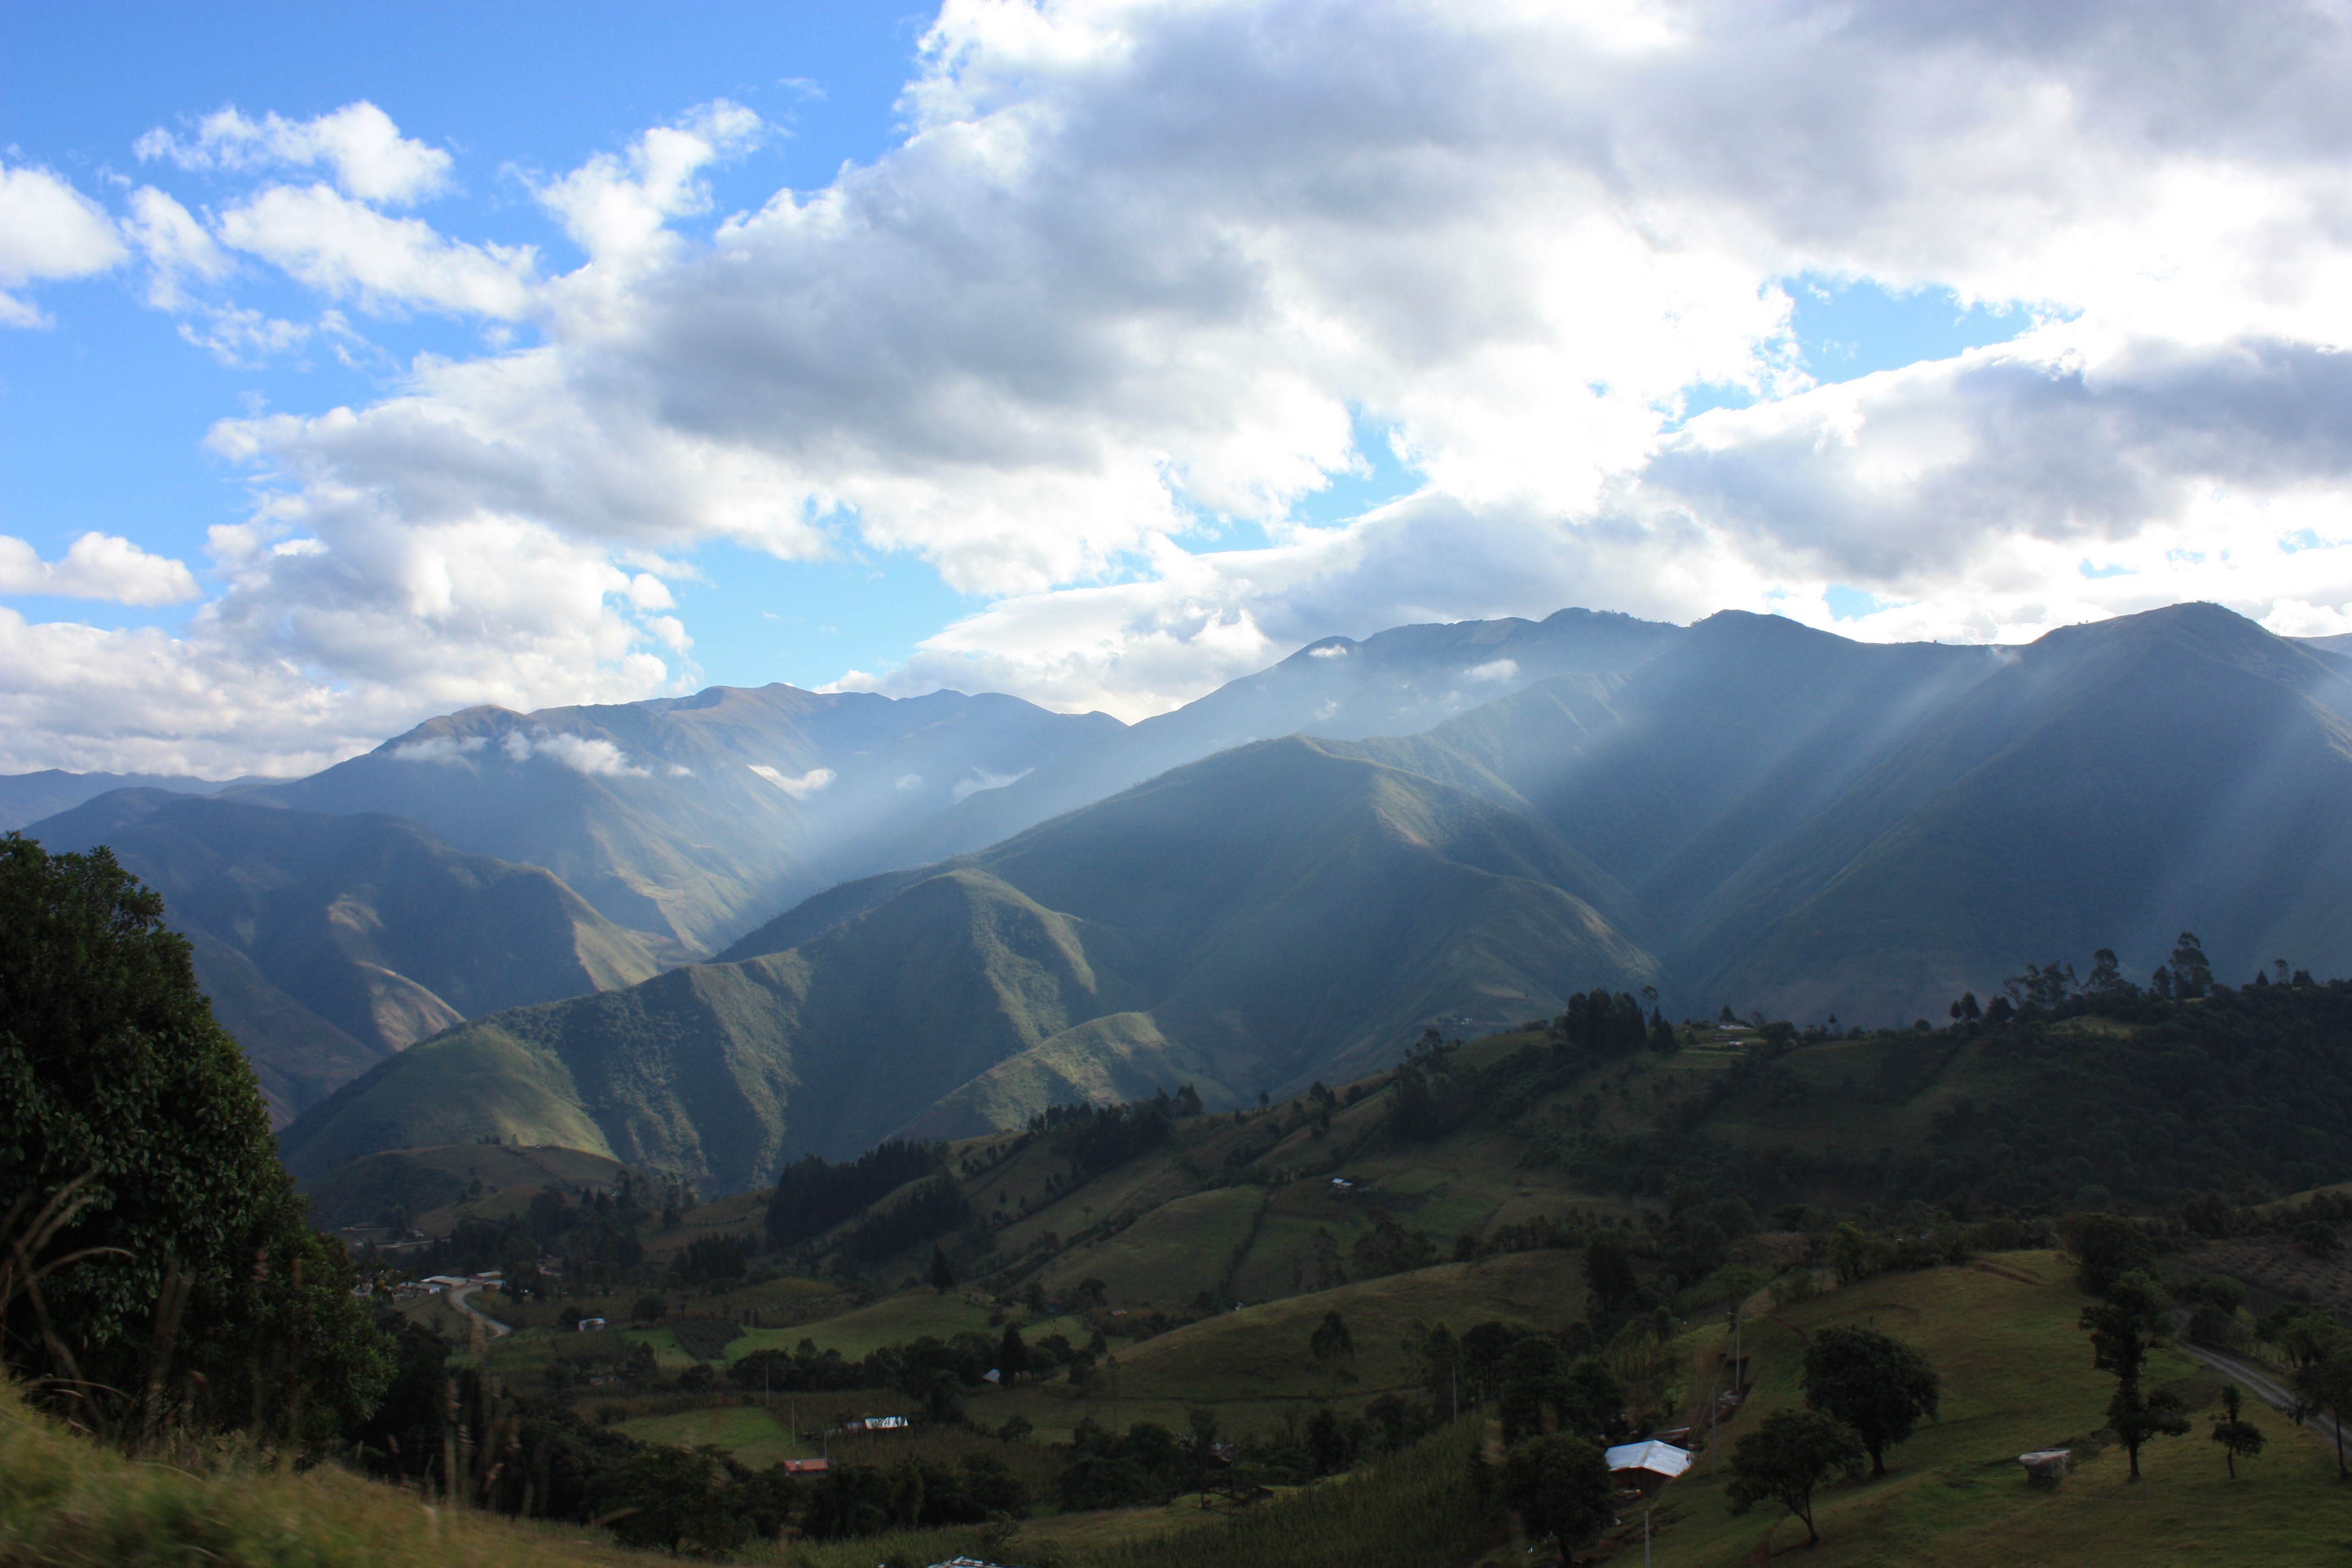 Landscape attributes determine restoration outcomes in the Ecuadorian Andes